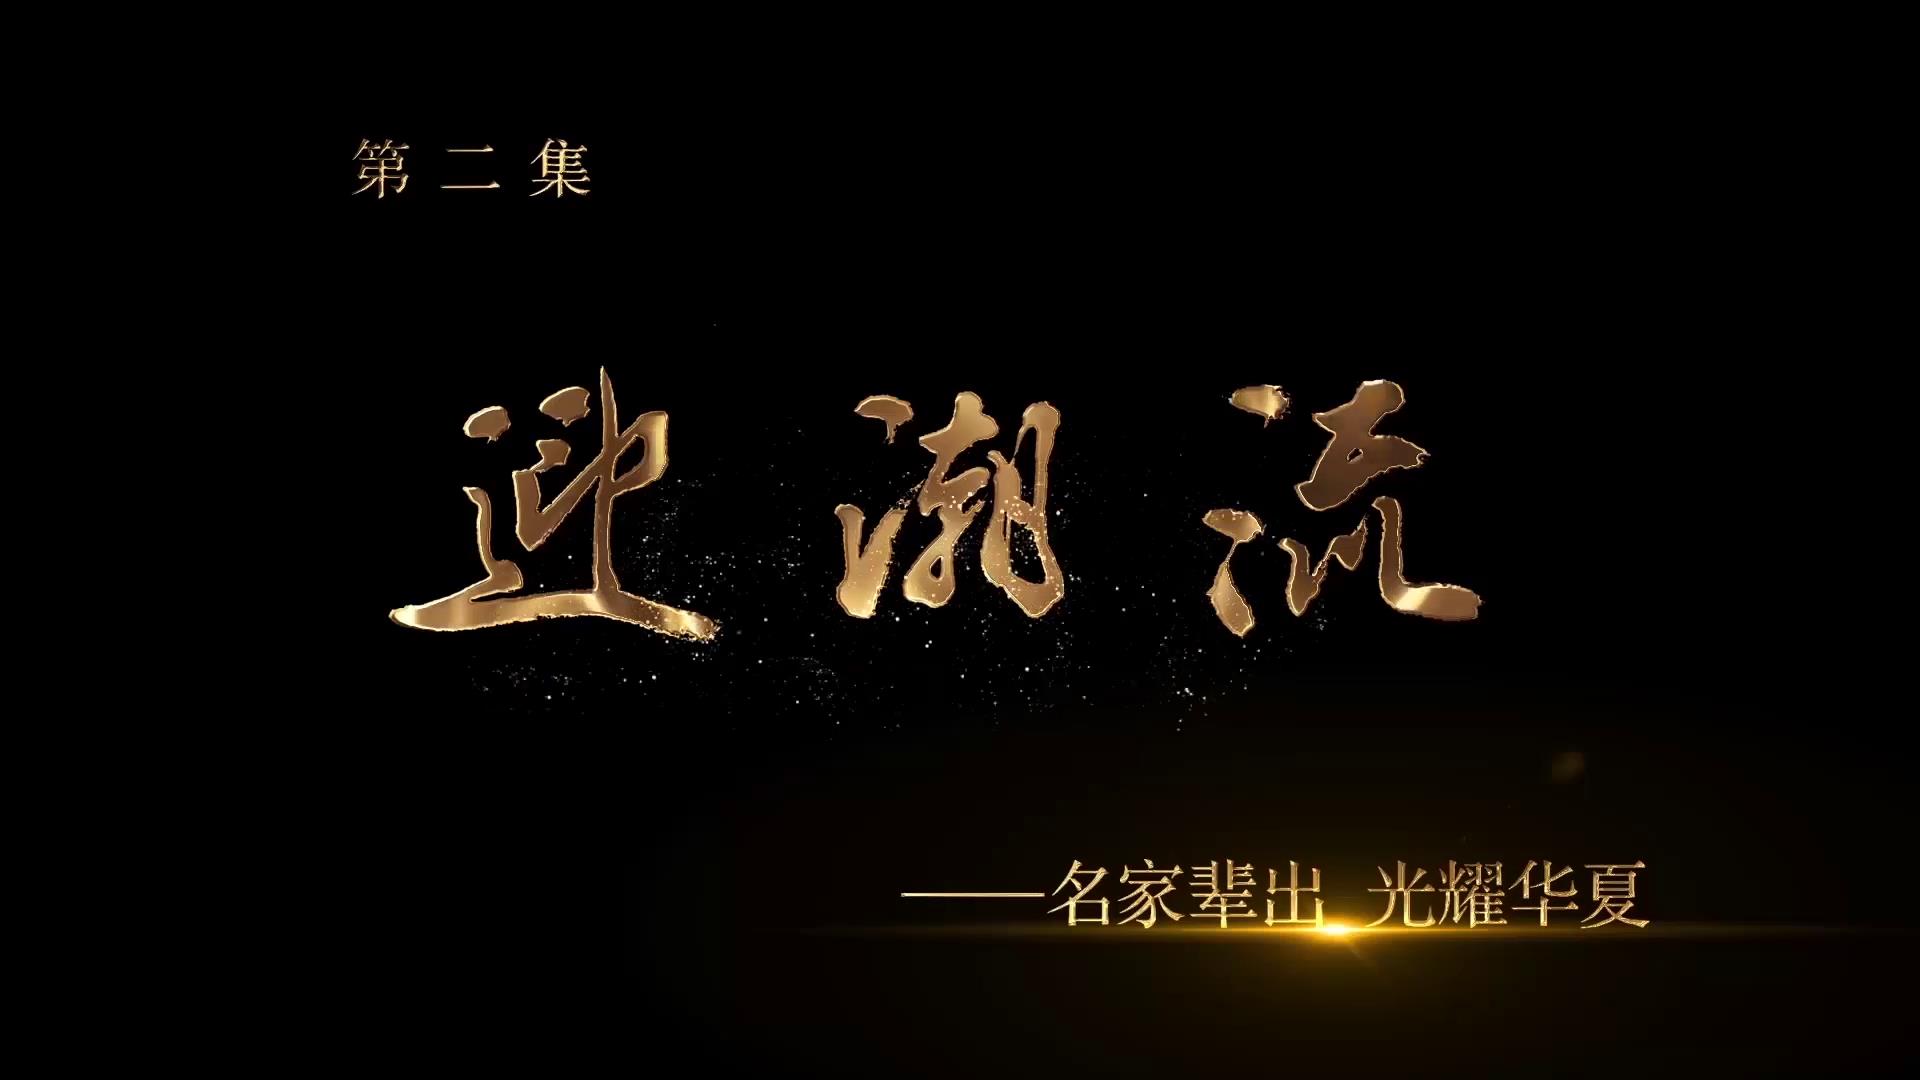 《中国画坛齐鲁风》第二集 迎潮流——名家辈出·光耀华夏